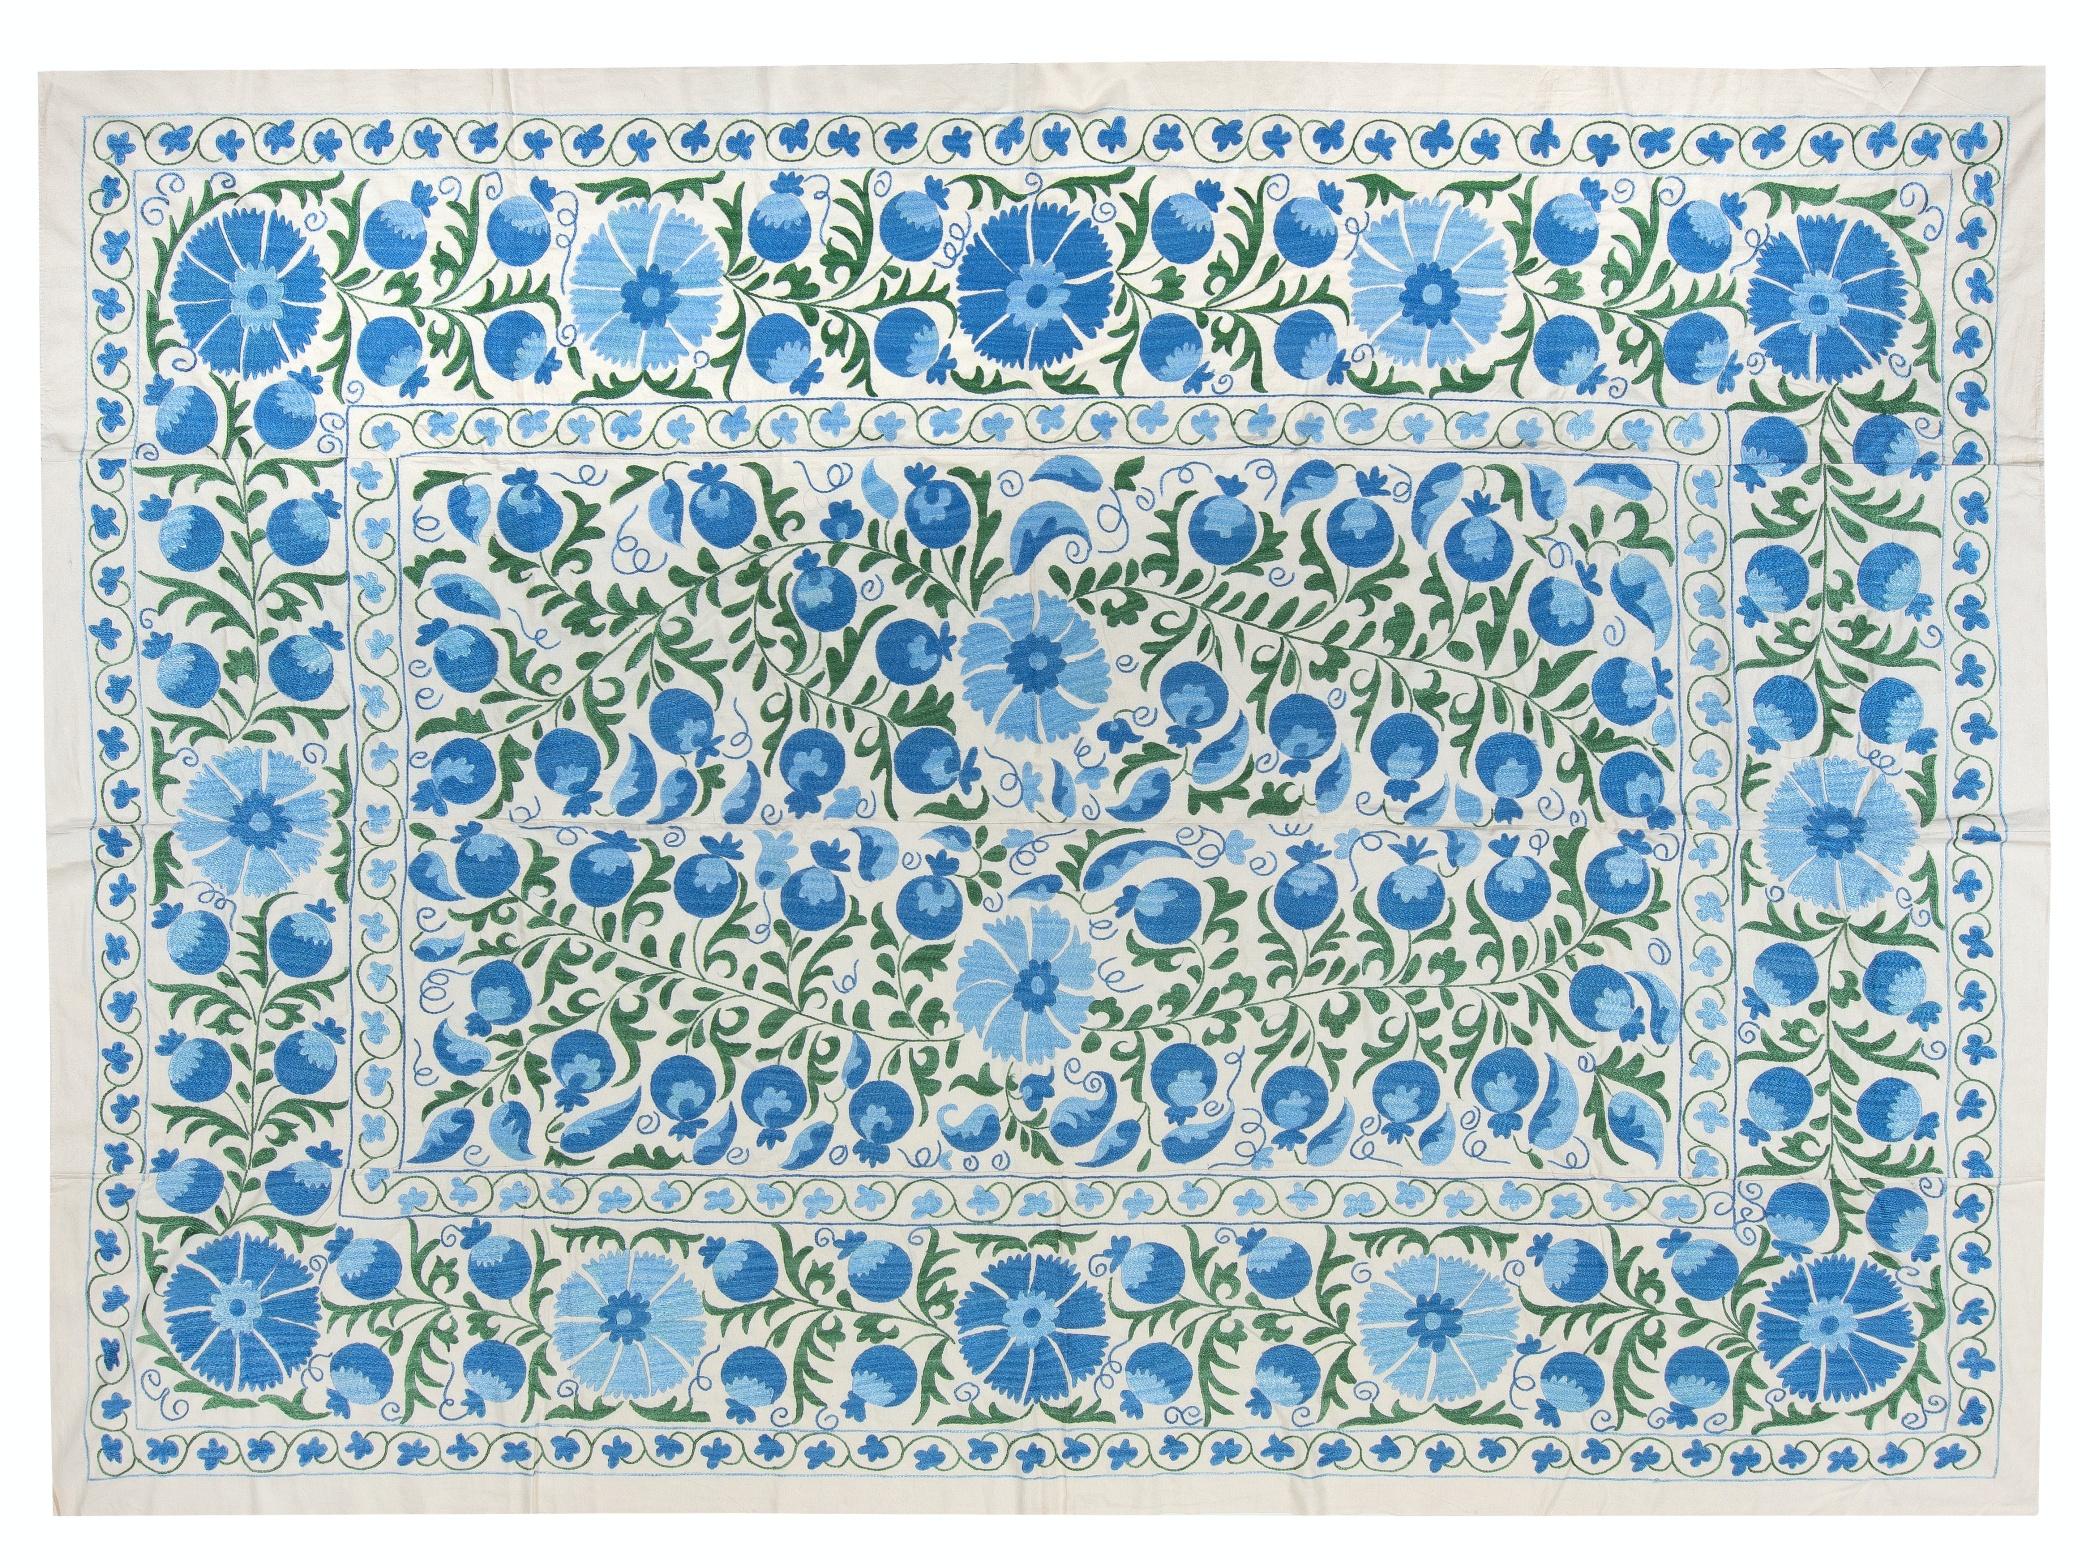 Coton 6.4x8.3 Ft Tapis de lit en broderie de soie, tenture murale Suzani, tapisserie ouzbek bleue en vente